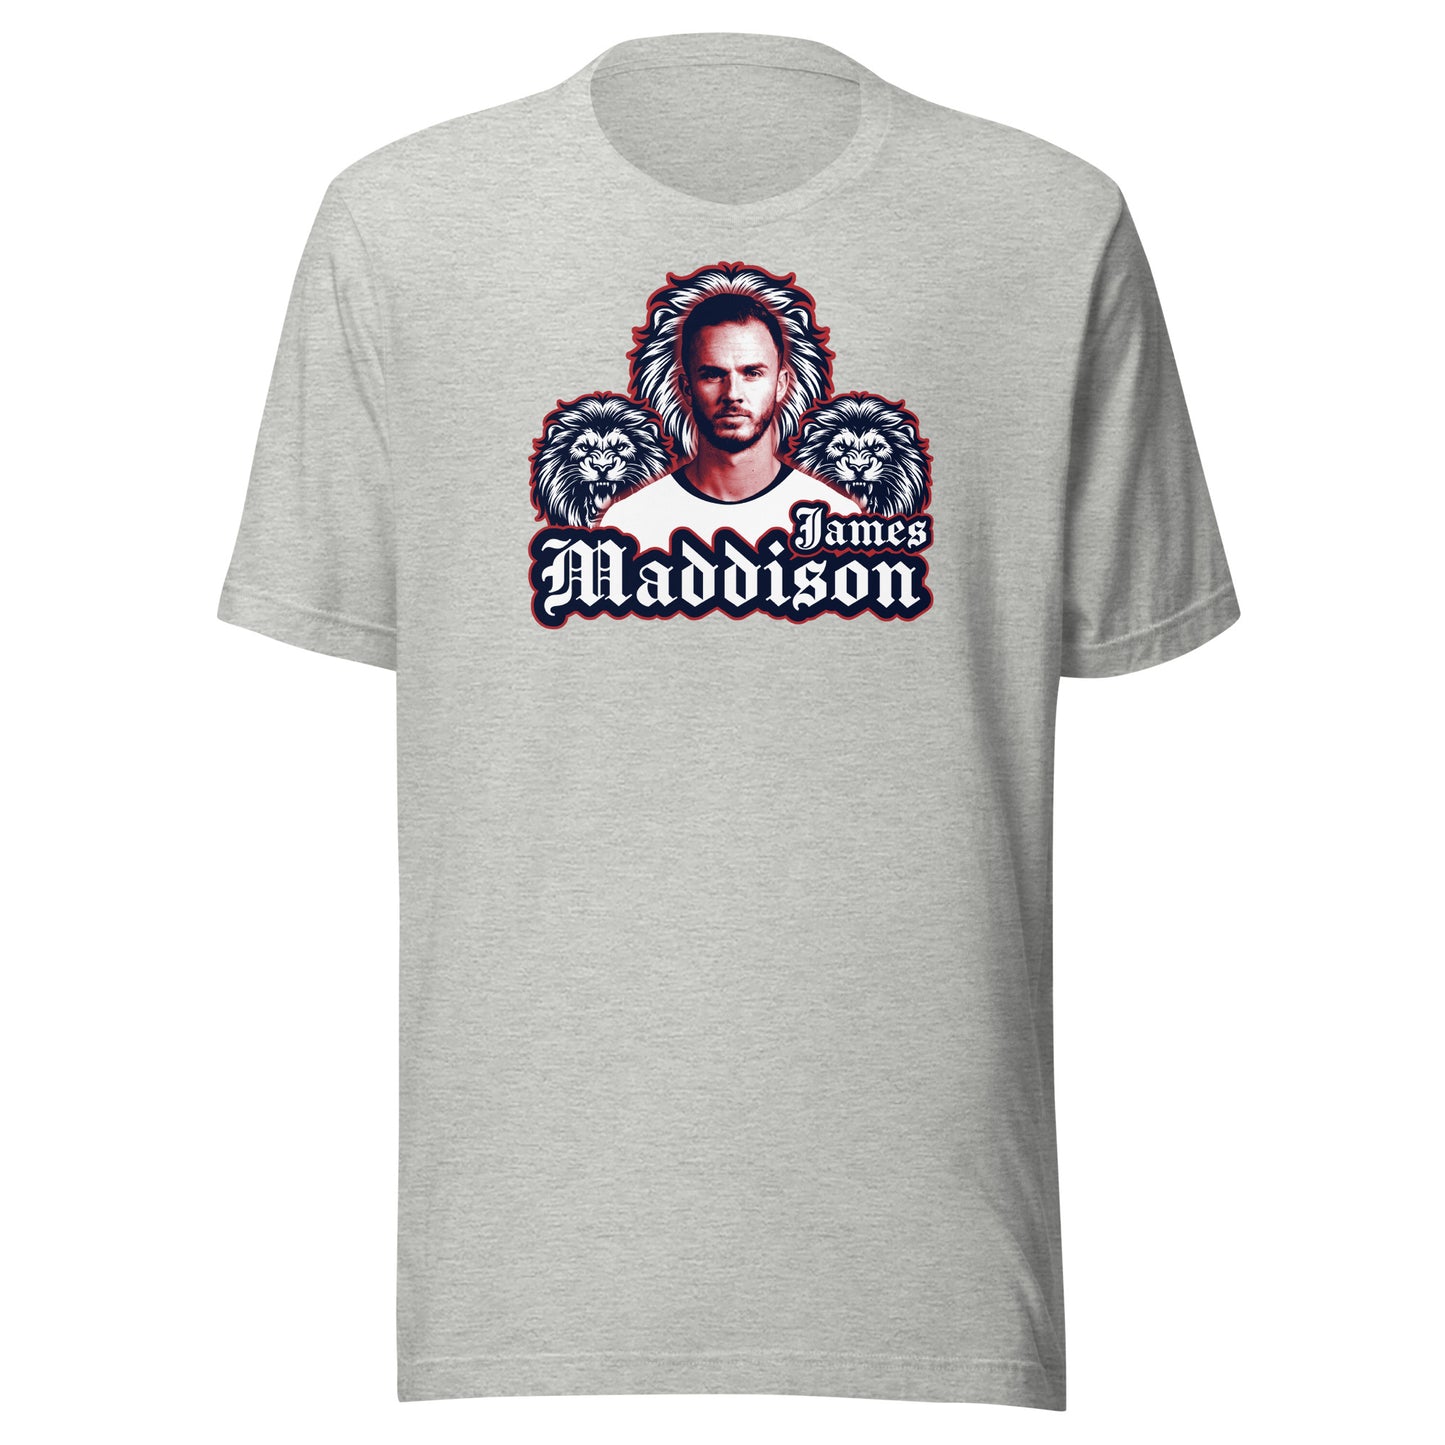 James Madison England T-Shirt